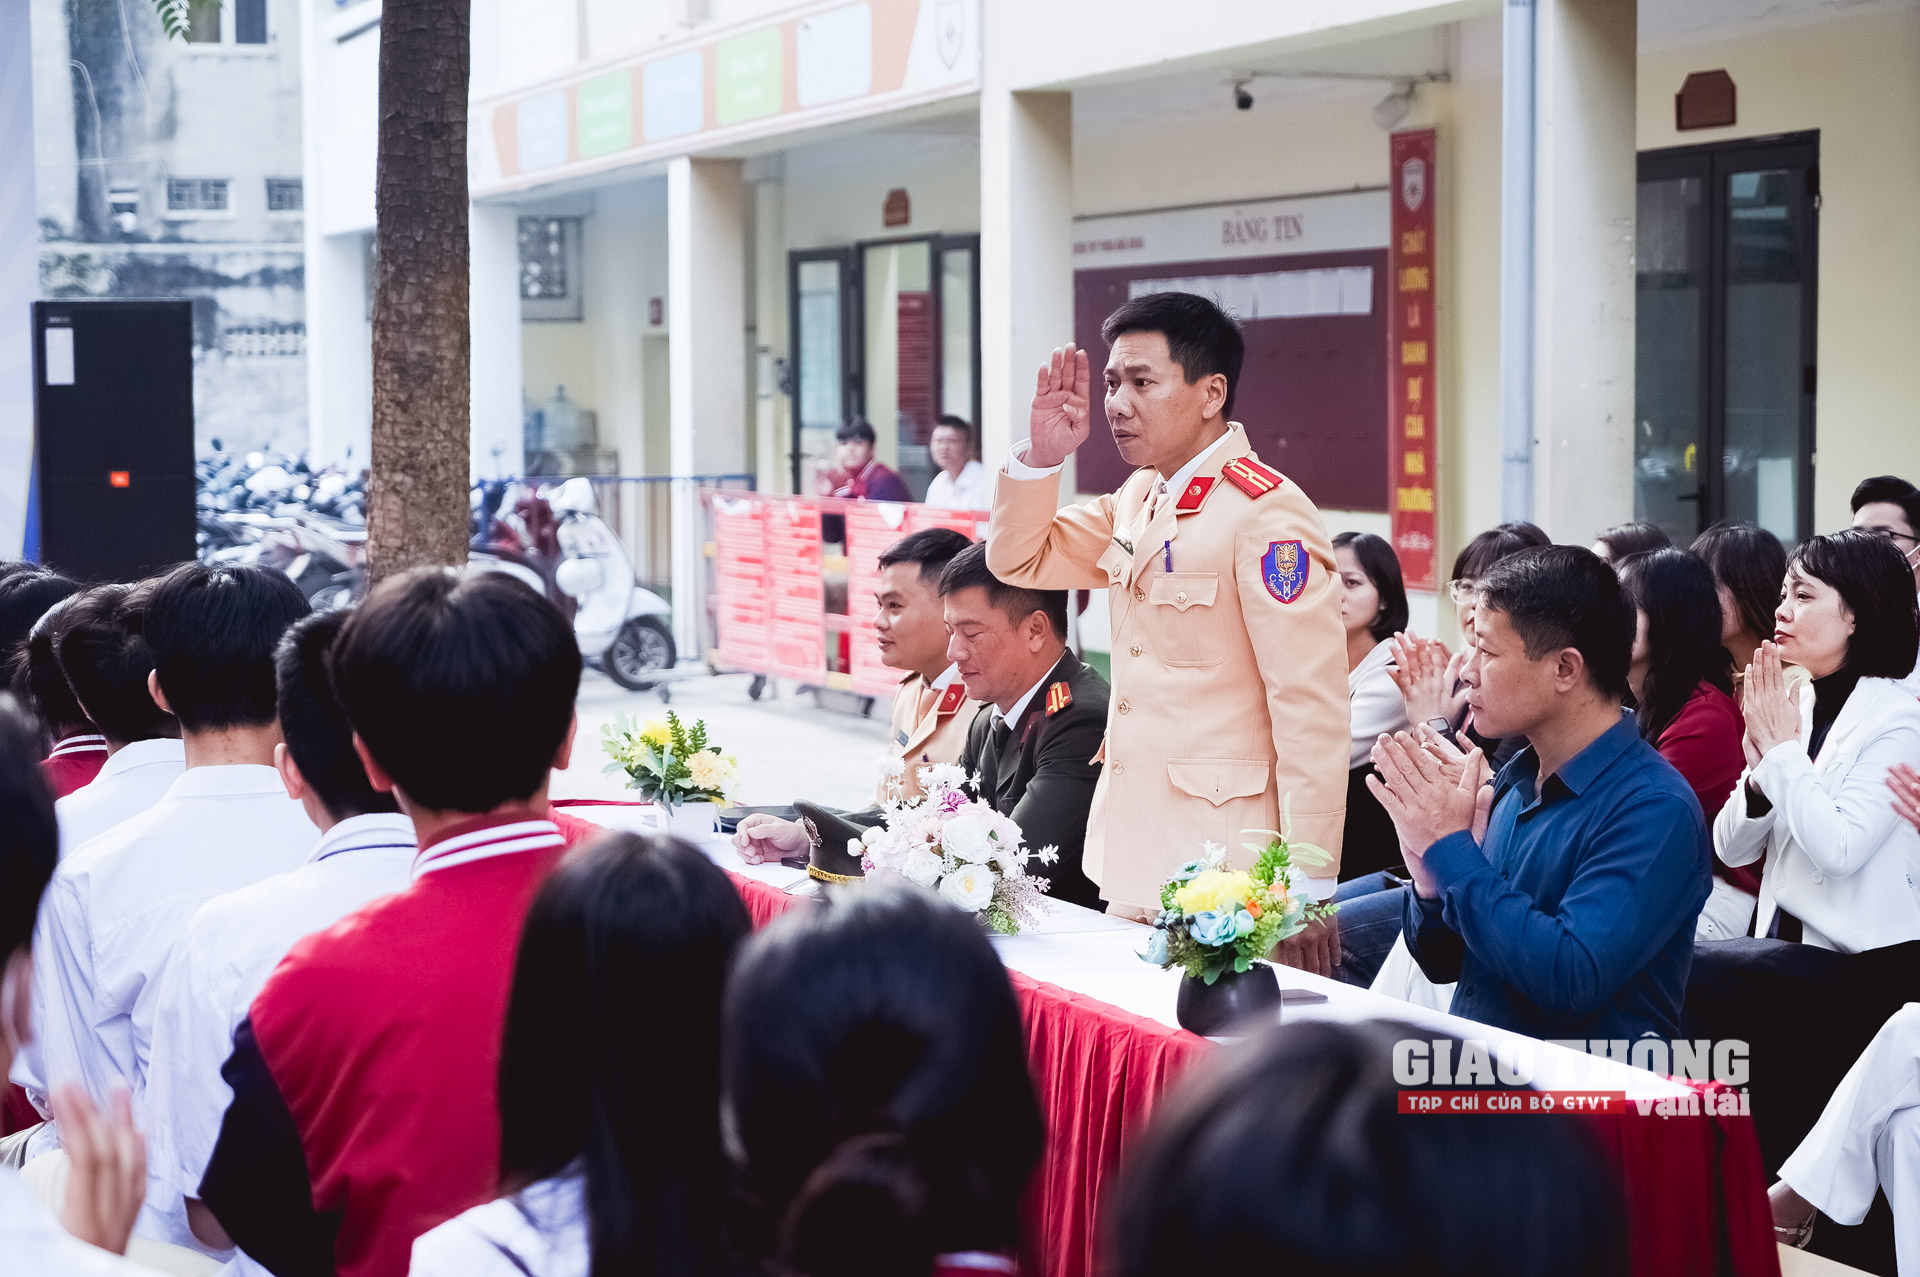 CSGT Hà Nội đối thoại về những nguy cơ khi học sinh dùng xe cơ giới tham gia giao thông - Ảnh 3.